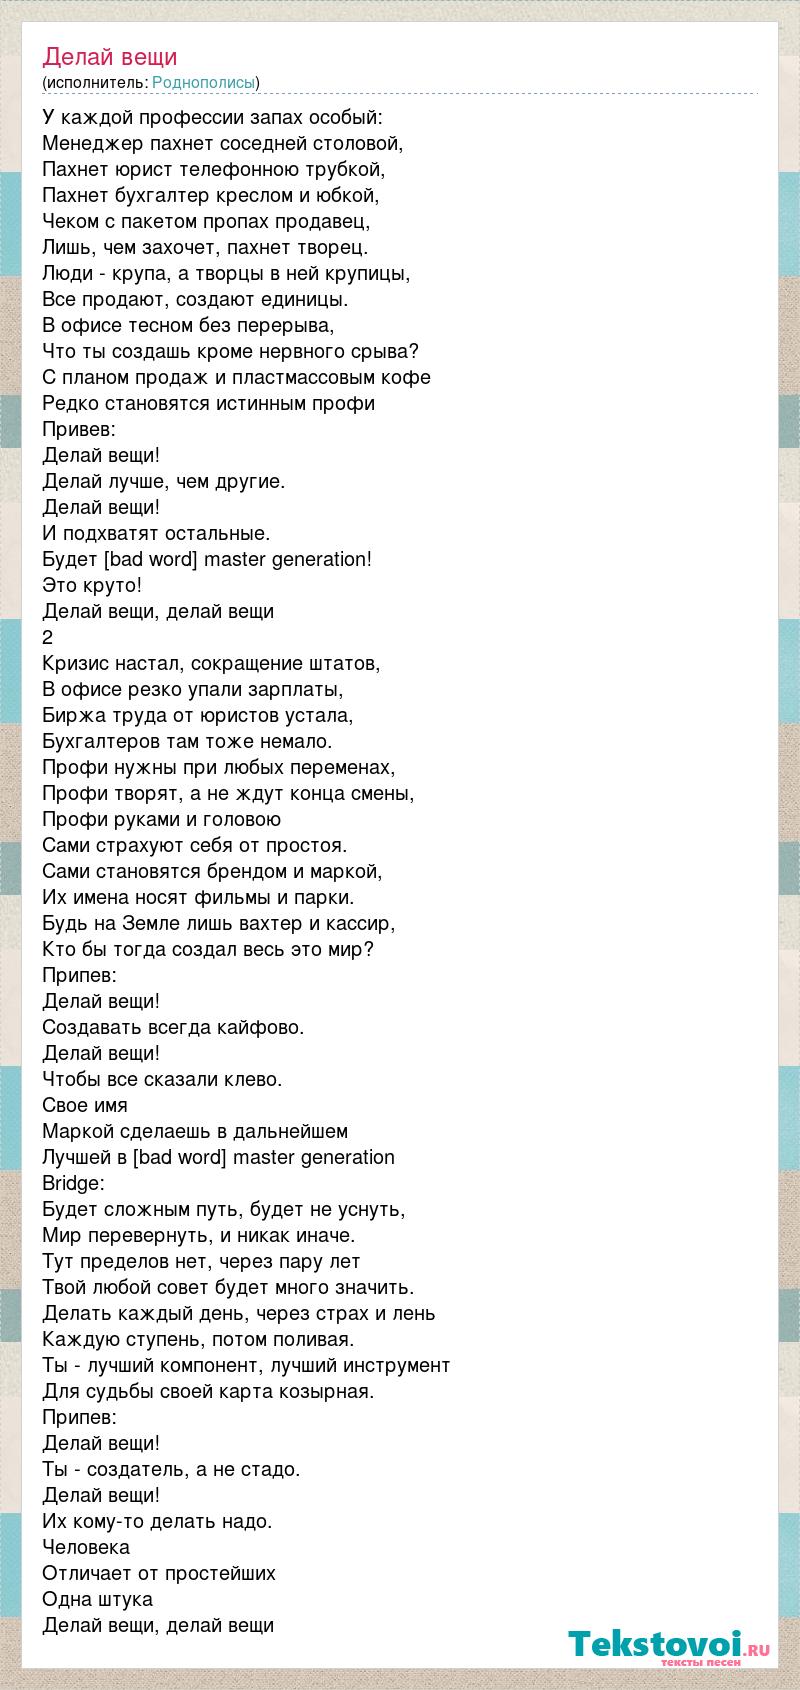 Lyrics of Делай вещи - Роднополисы